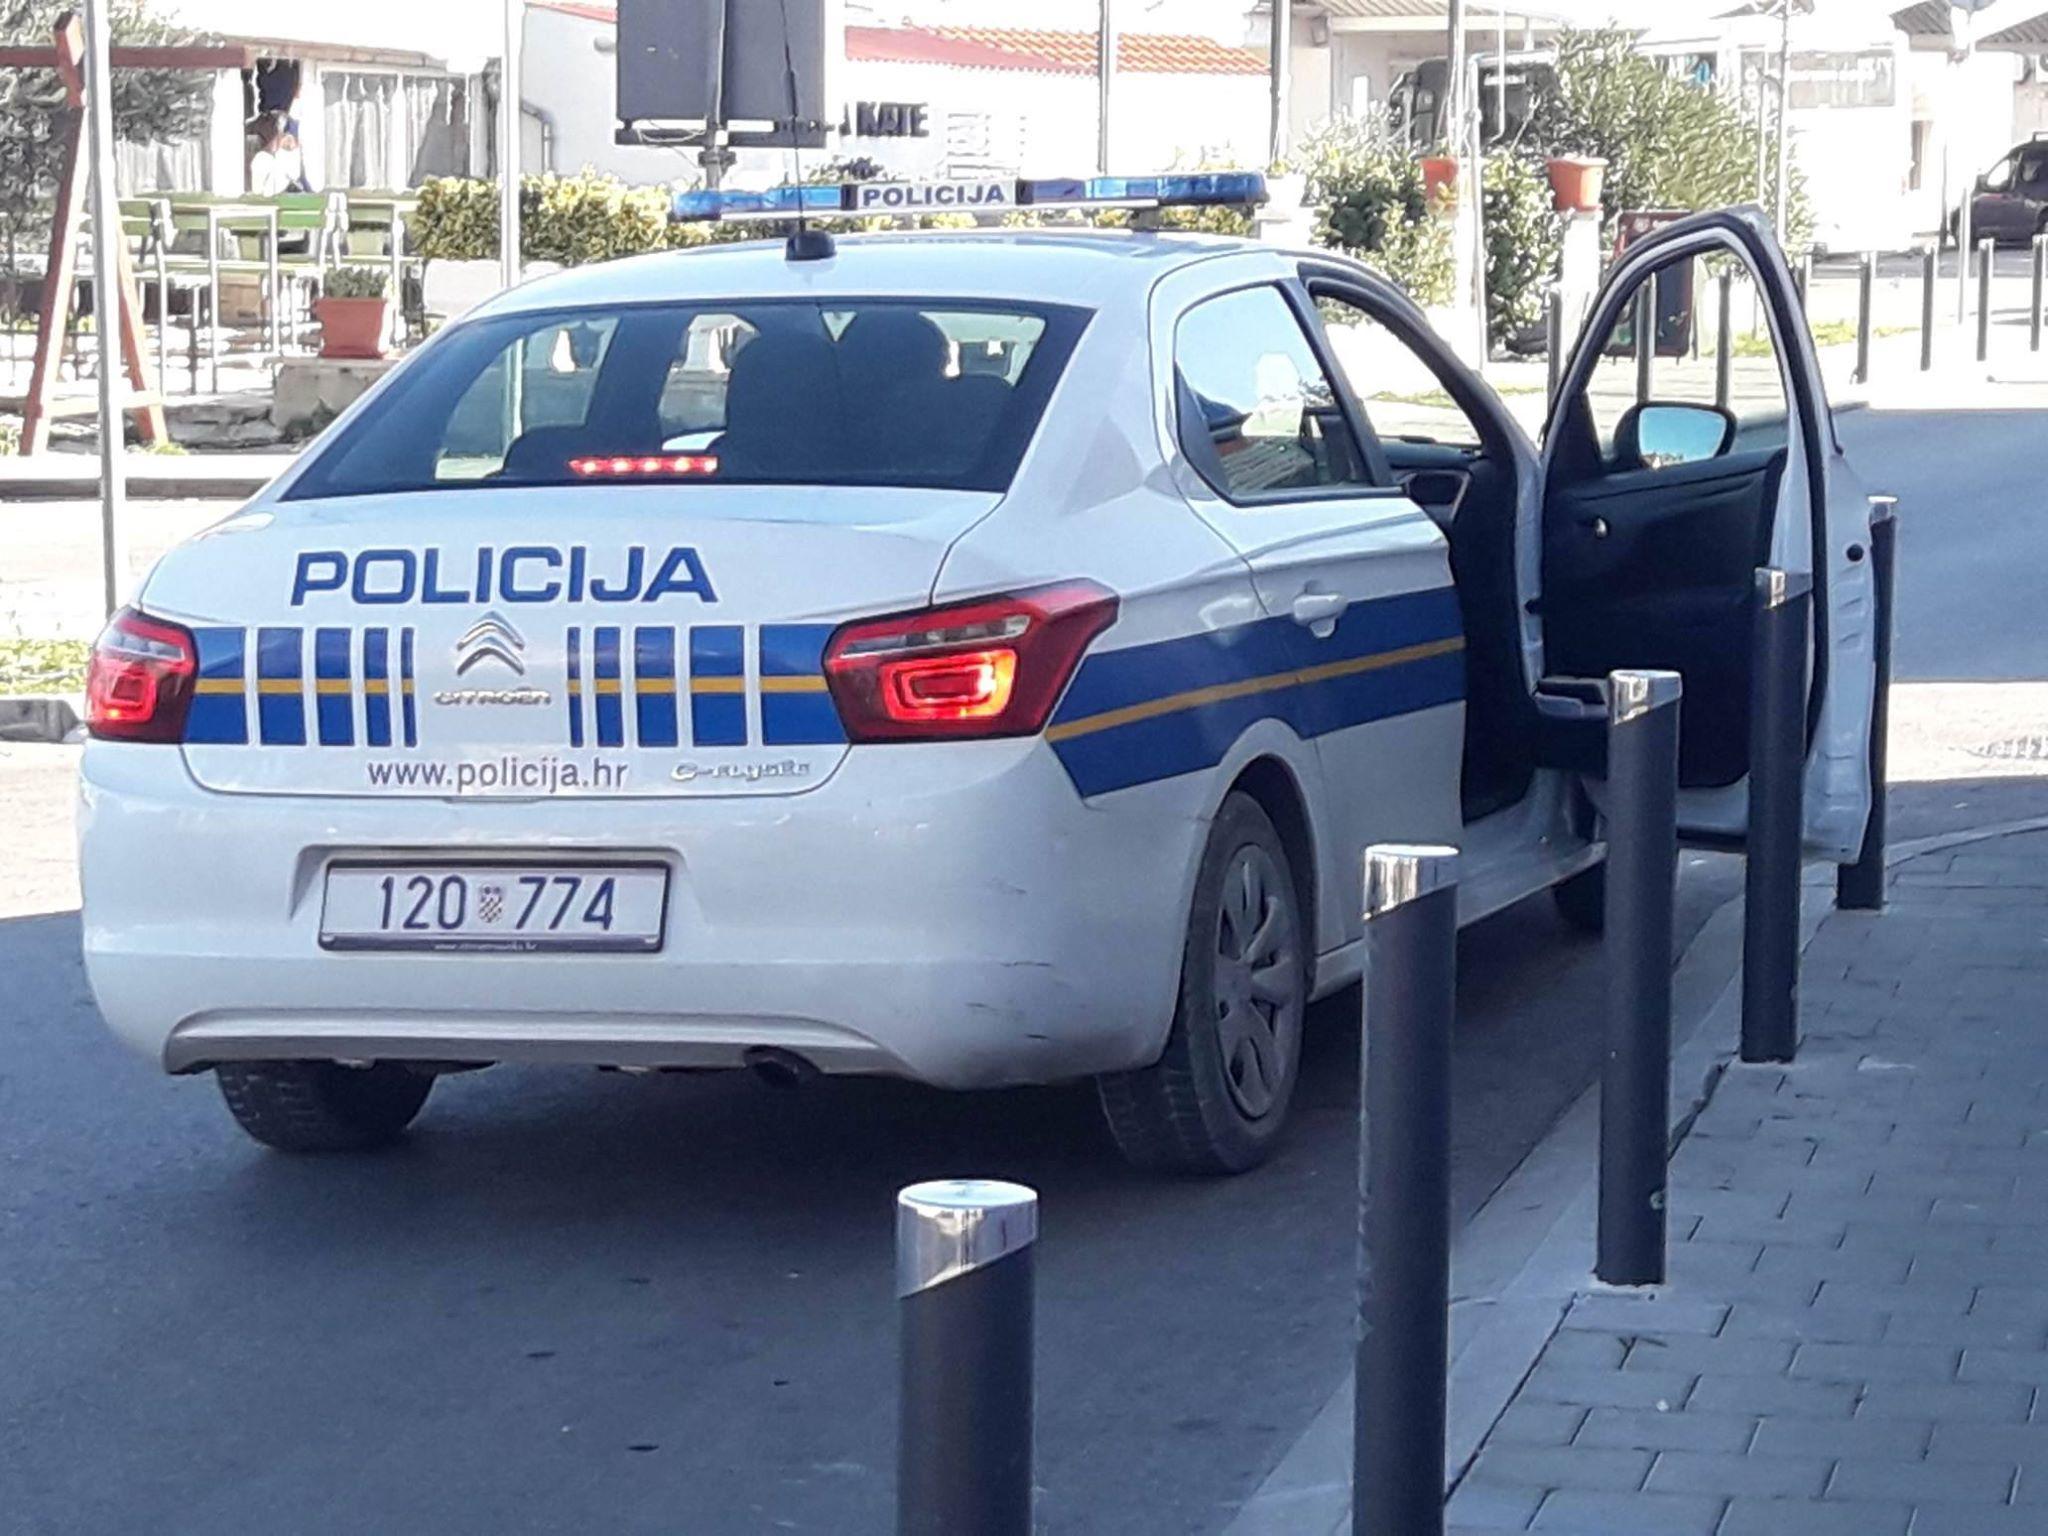 Policija na terenu - Avaz